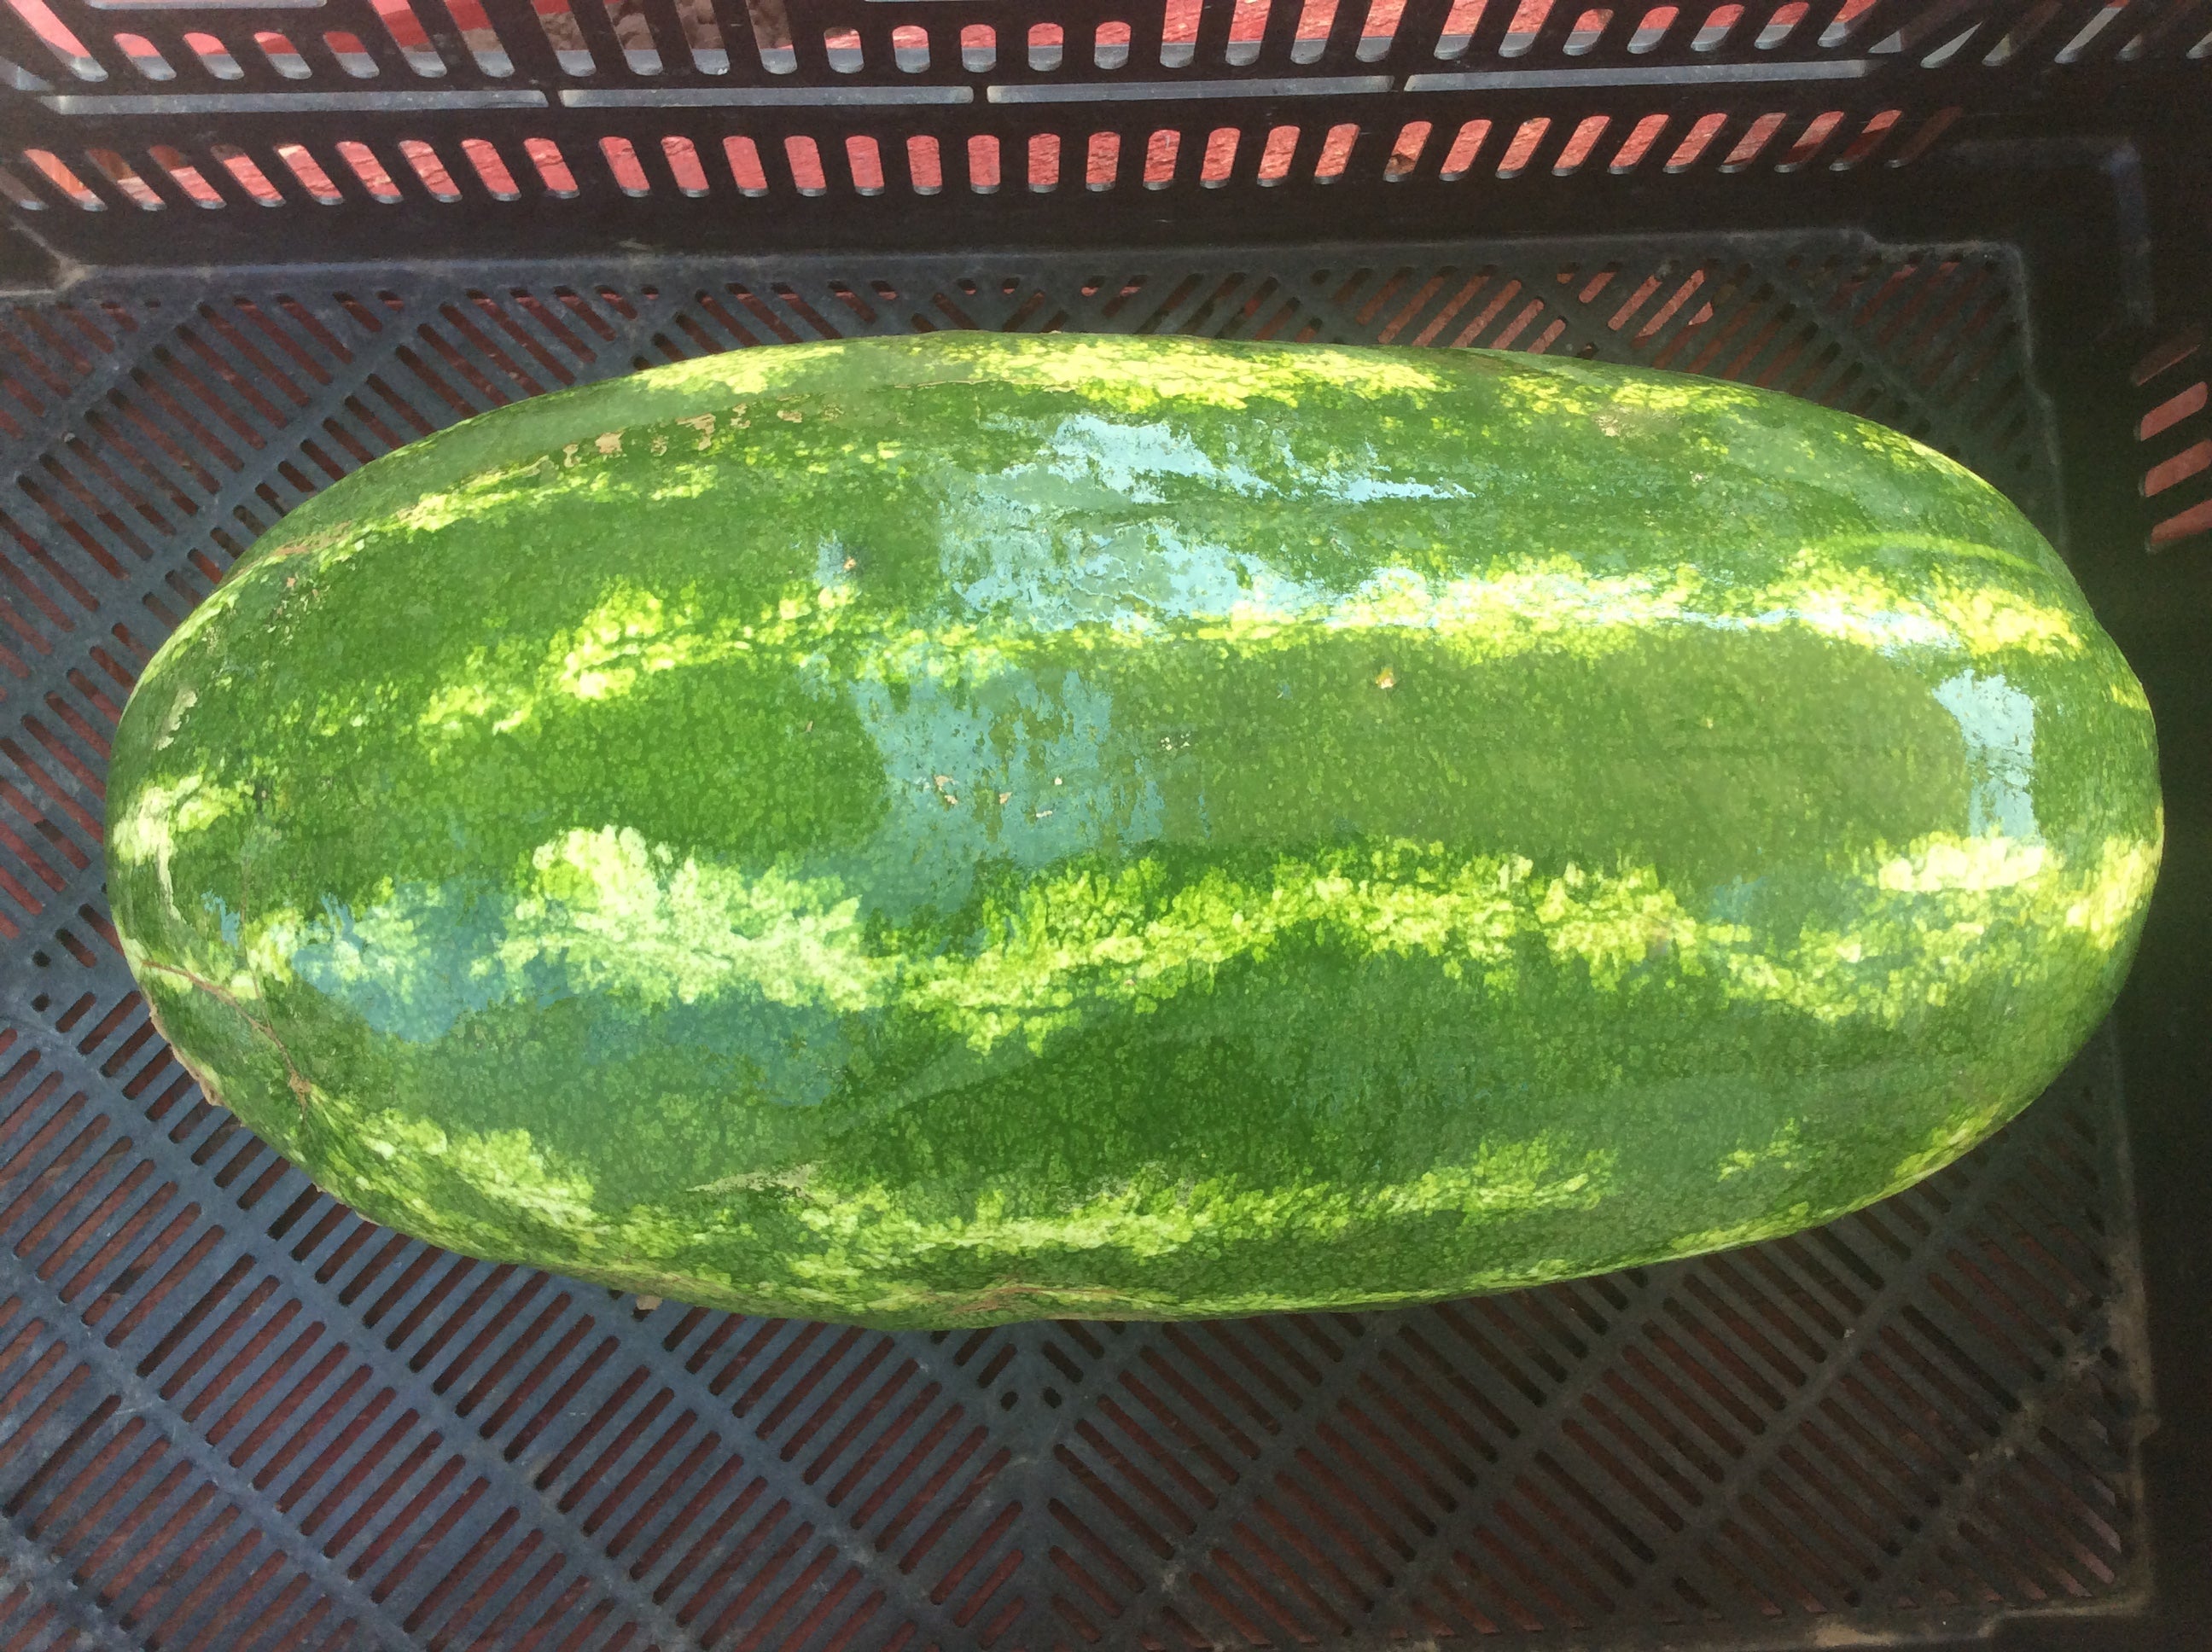 Local Watermelon